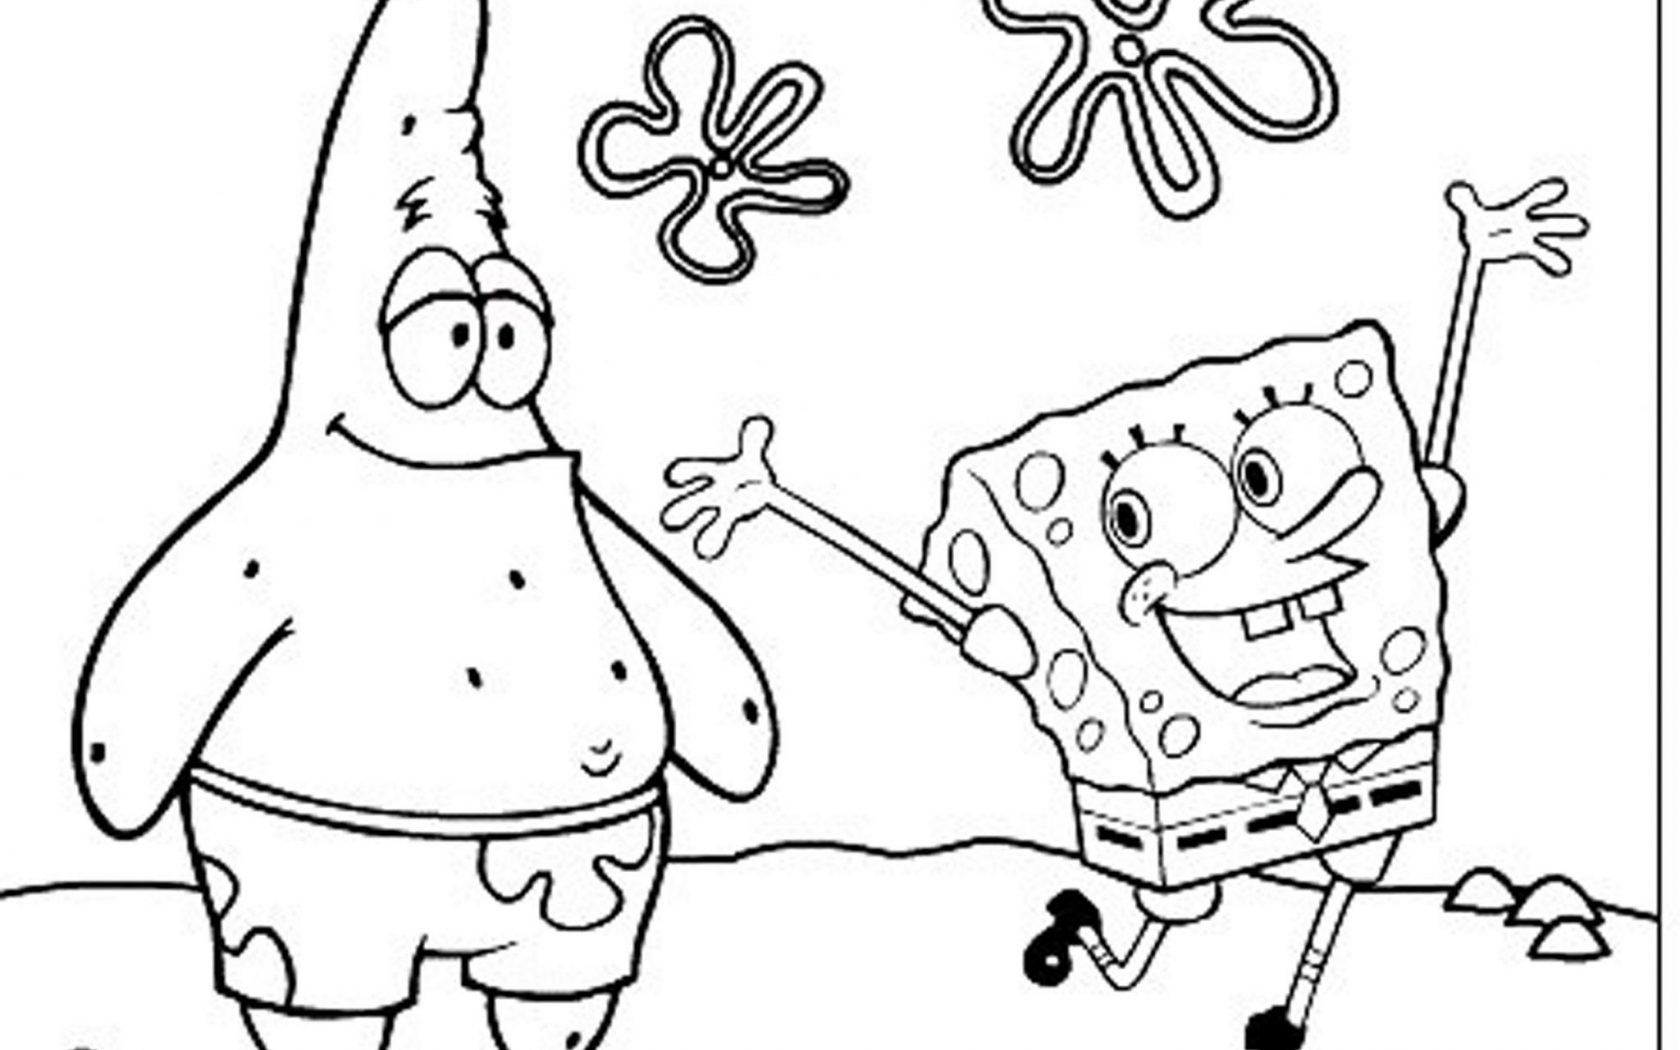 Spongebob Squarepants Coloring Pages Free Printable At GetColorings 